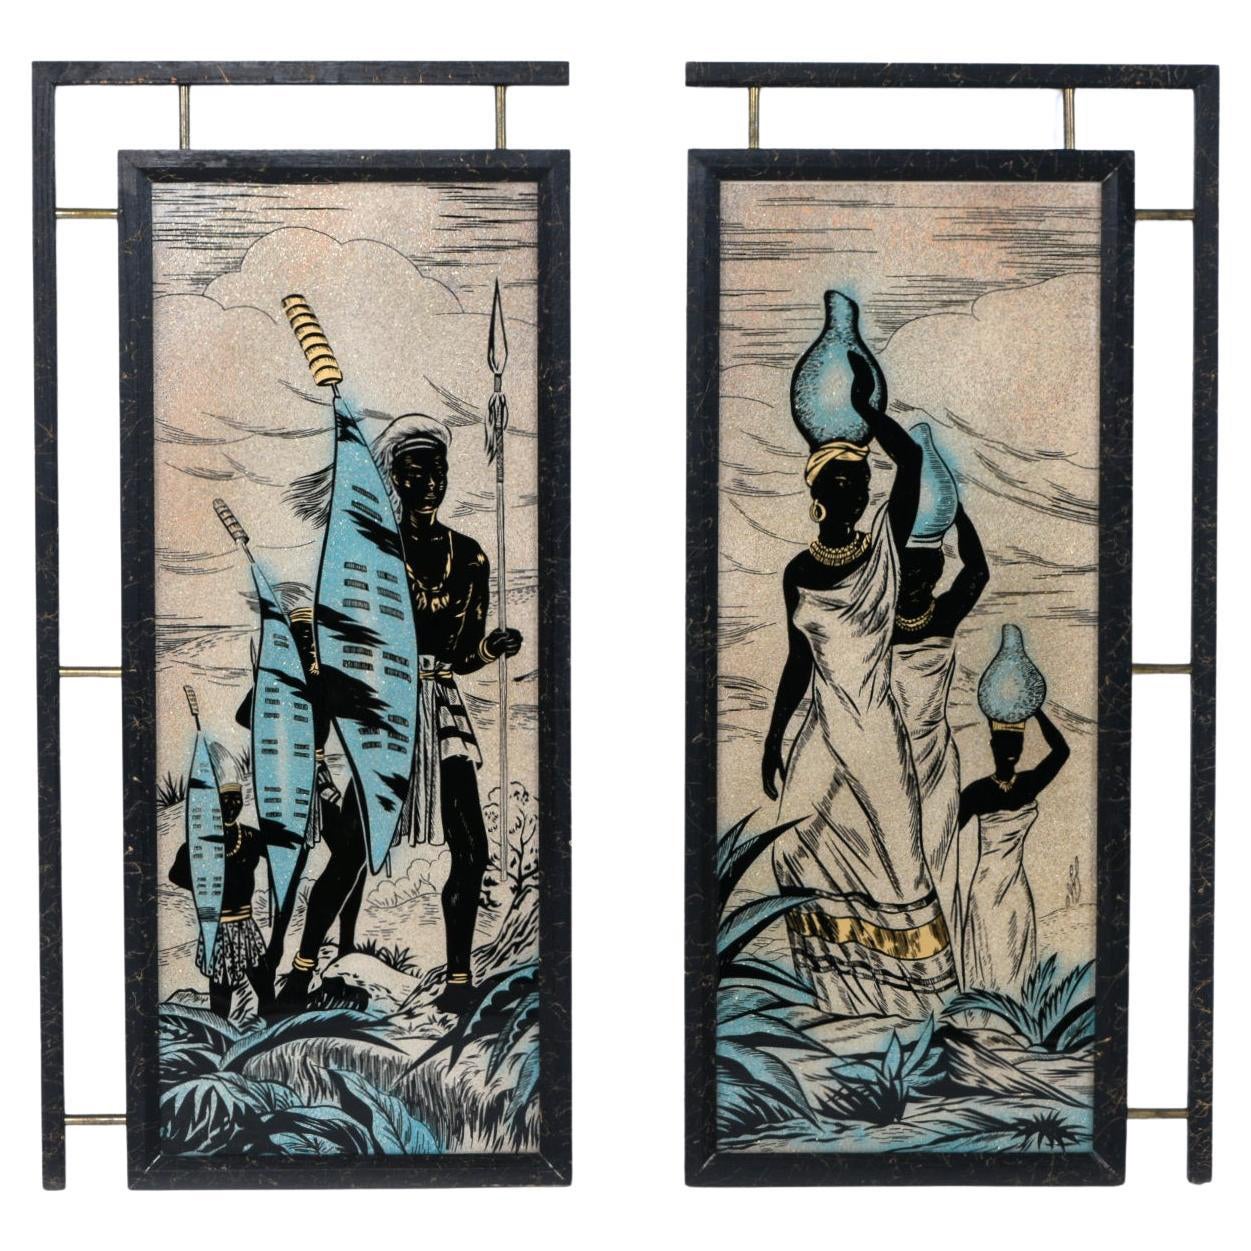 Panneaux de verre peints représentant des guerriers africains et des femmes du milieu du siècle dernier